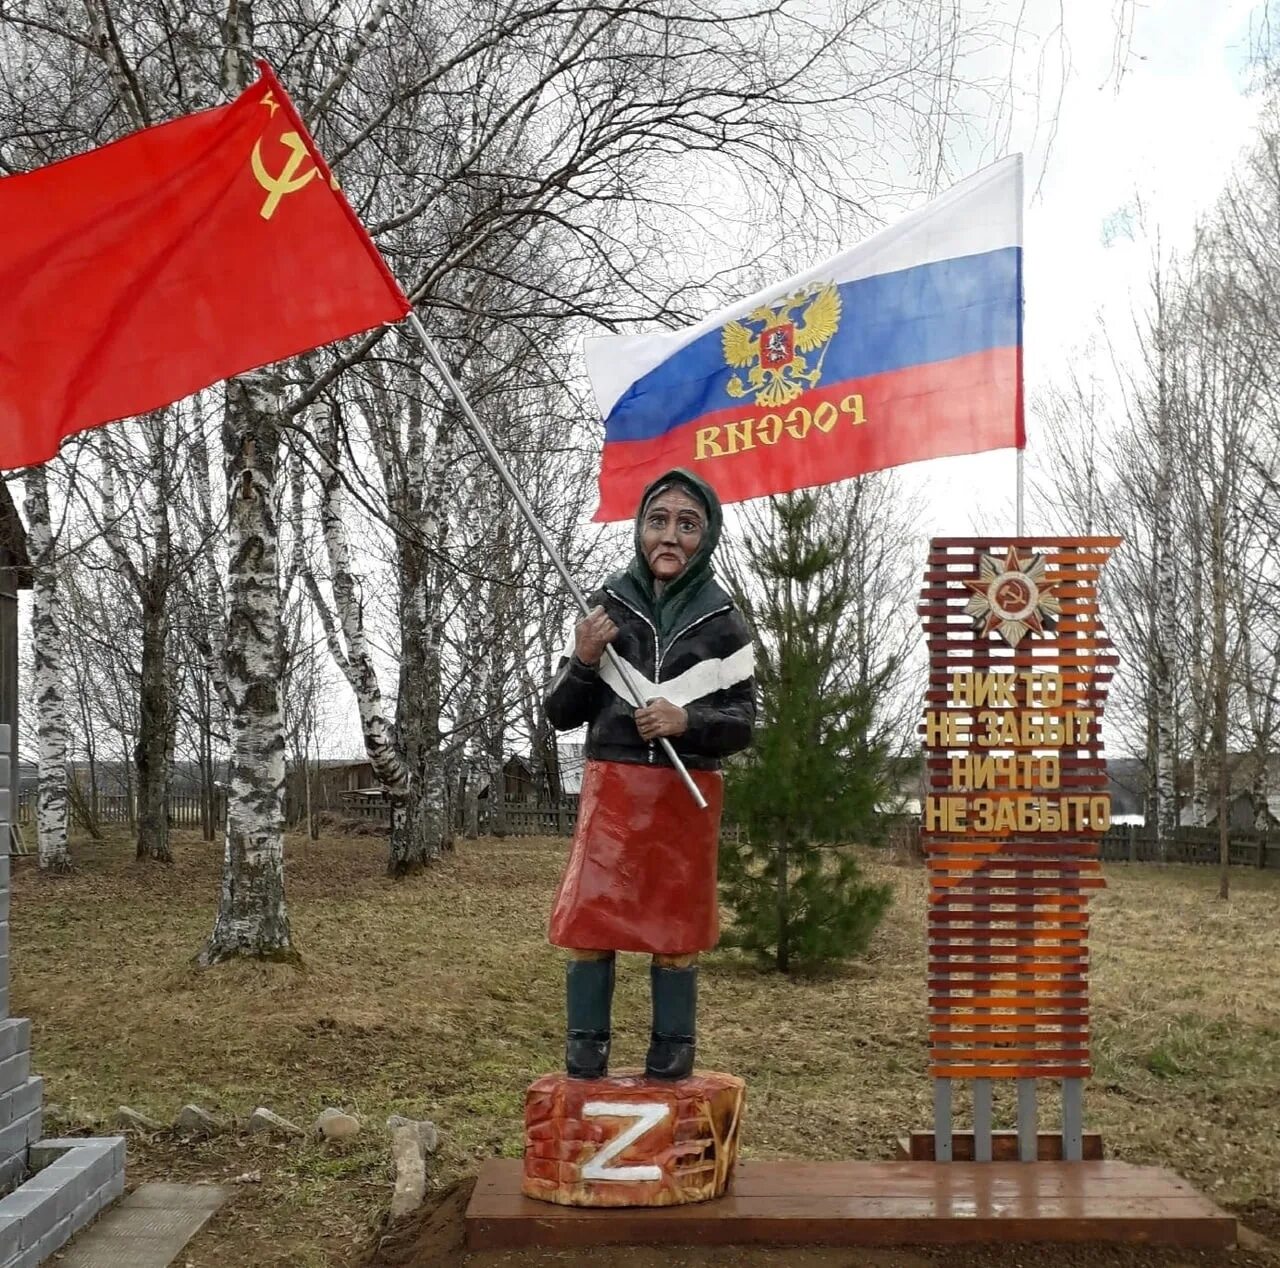 Бабушка знаменем. Бабушка с флагом знаменем. Красное Знамя на Украине. Памятники старушке с красным флагом. Украинская бабушка с красным флагом.